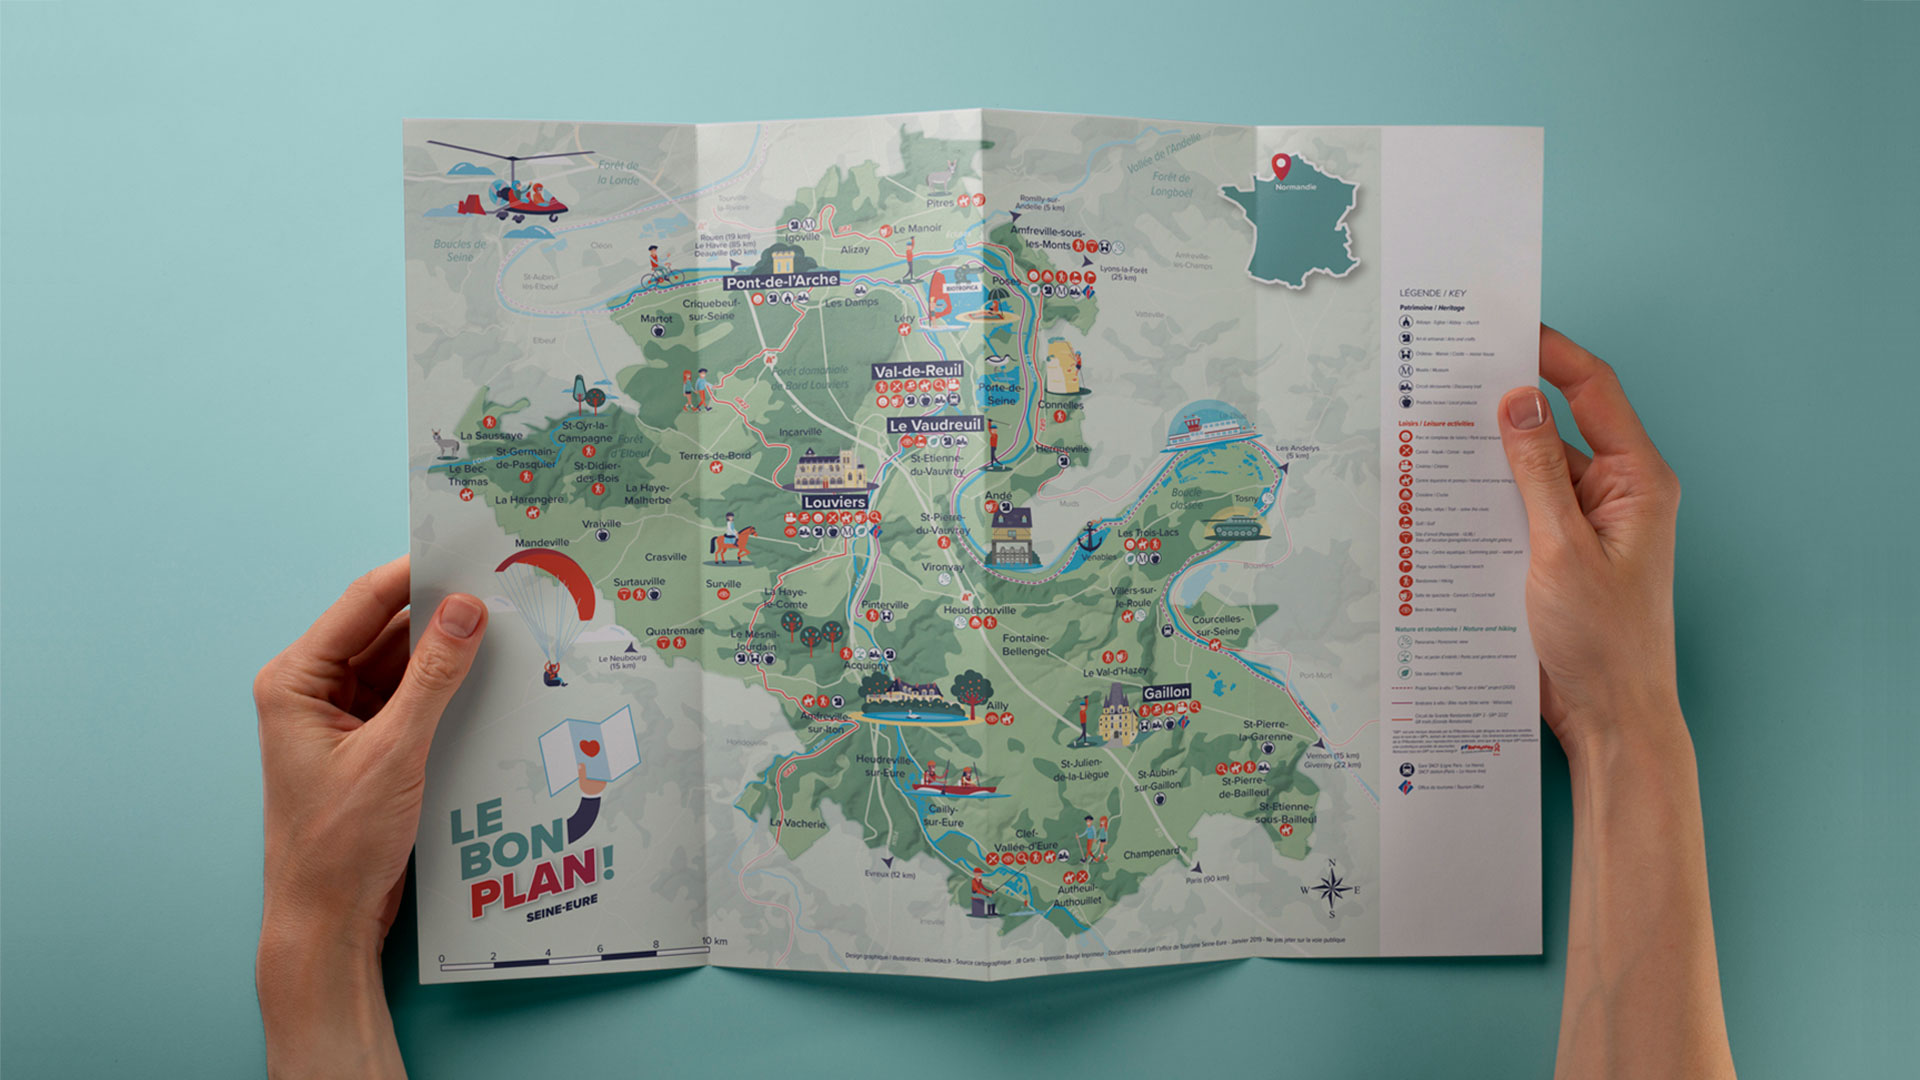 carte touristique illustrée de Seine-Eure tourisme - Par le studio de design graphique okowoko à Amiens dans les Hauts de France